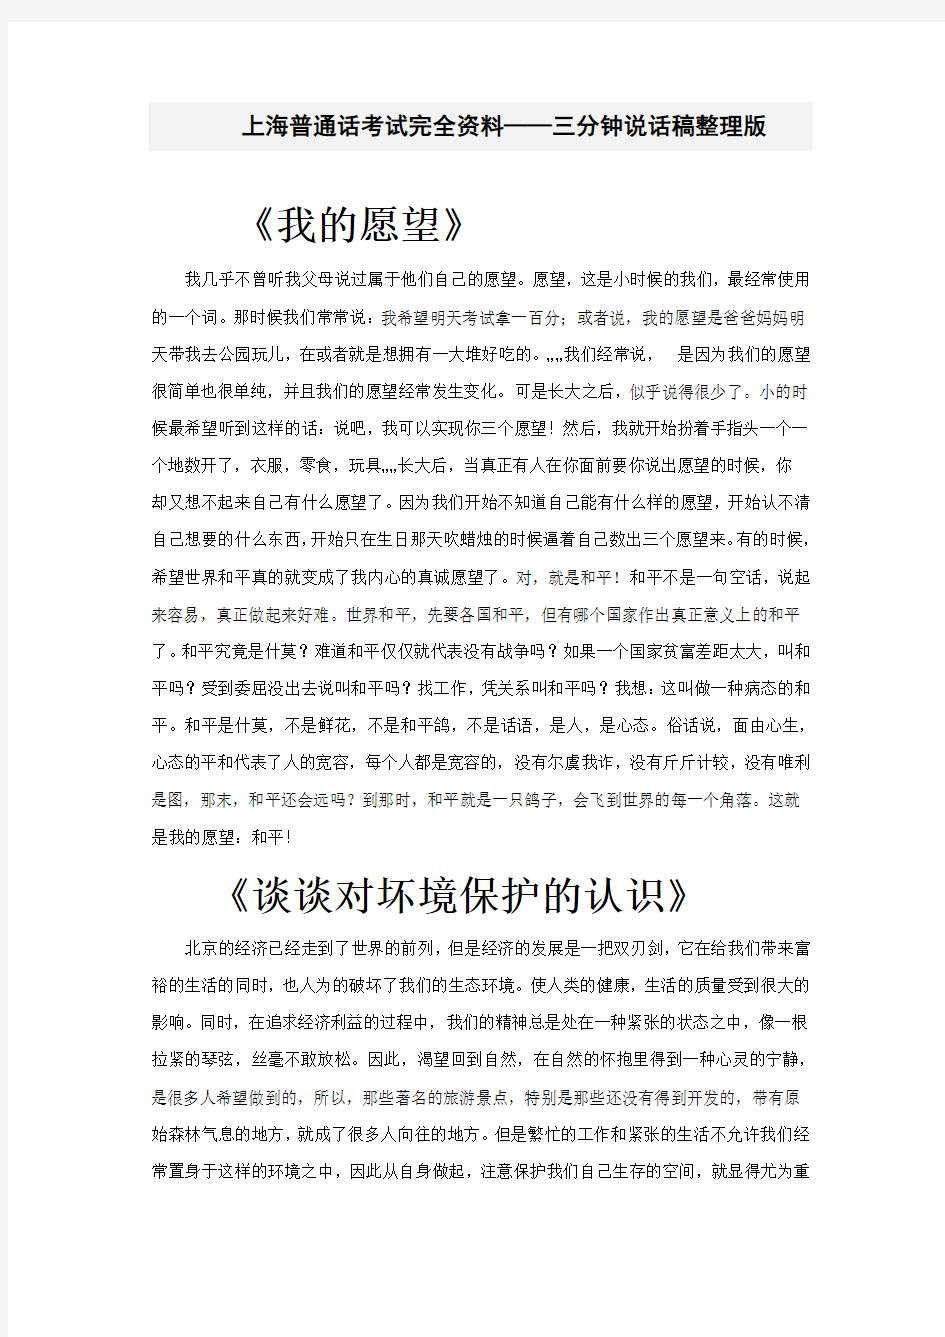 上海普通话考试完全资料(2)——三分钟说话稿(整理版)